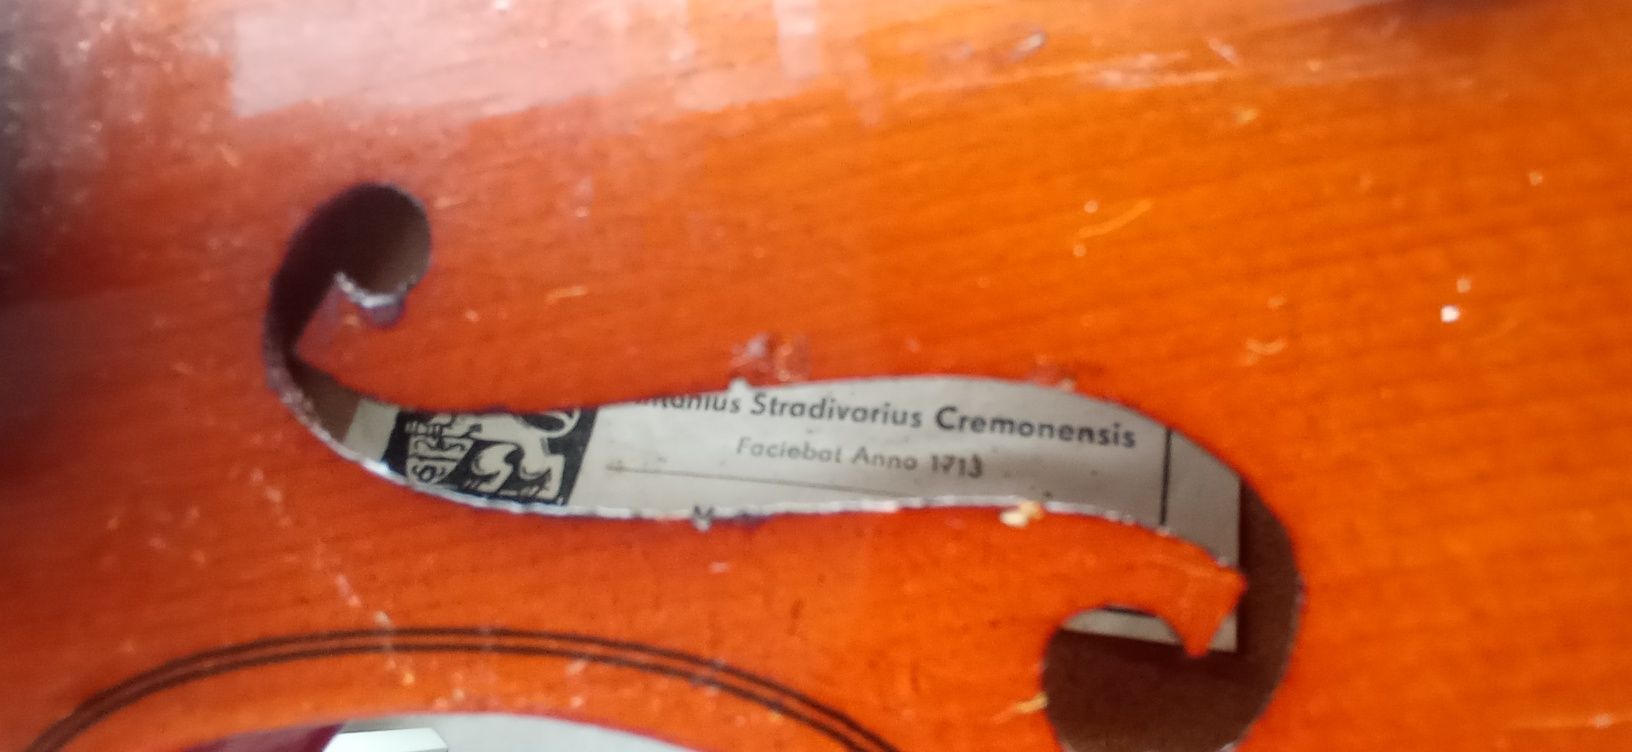 Stare skrzypce Antonius Stradivarius